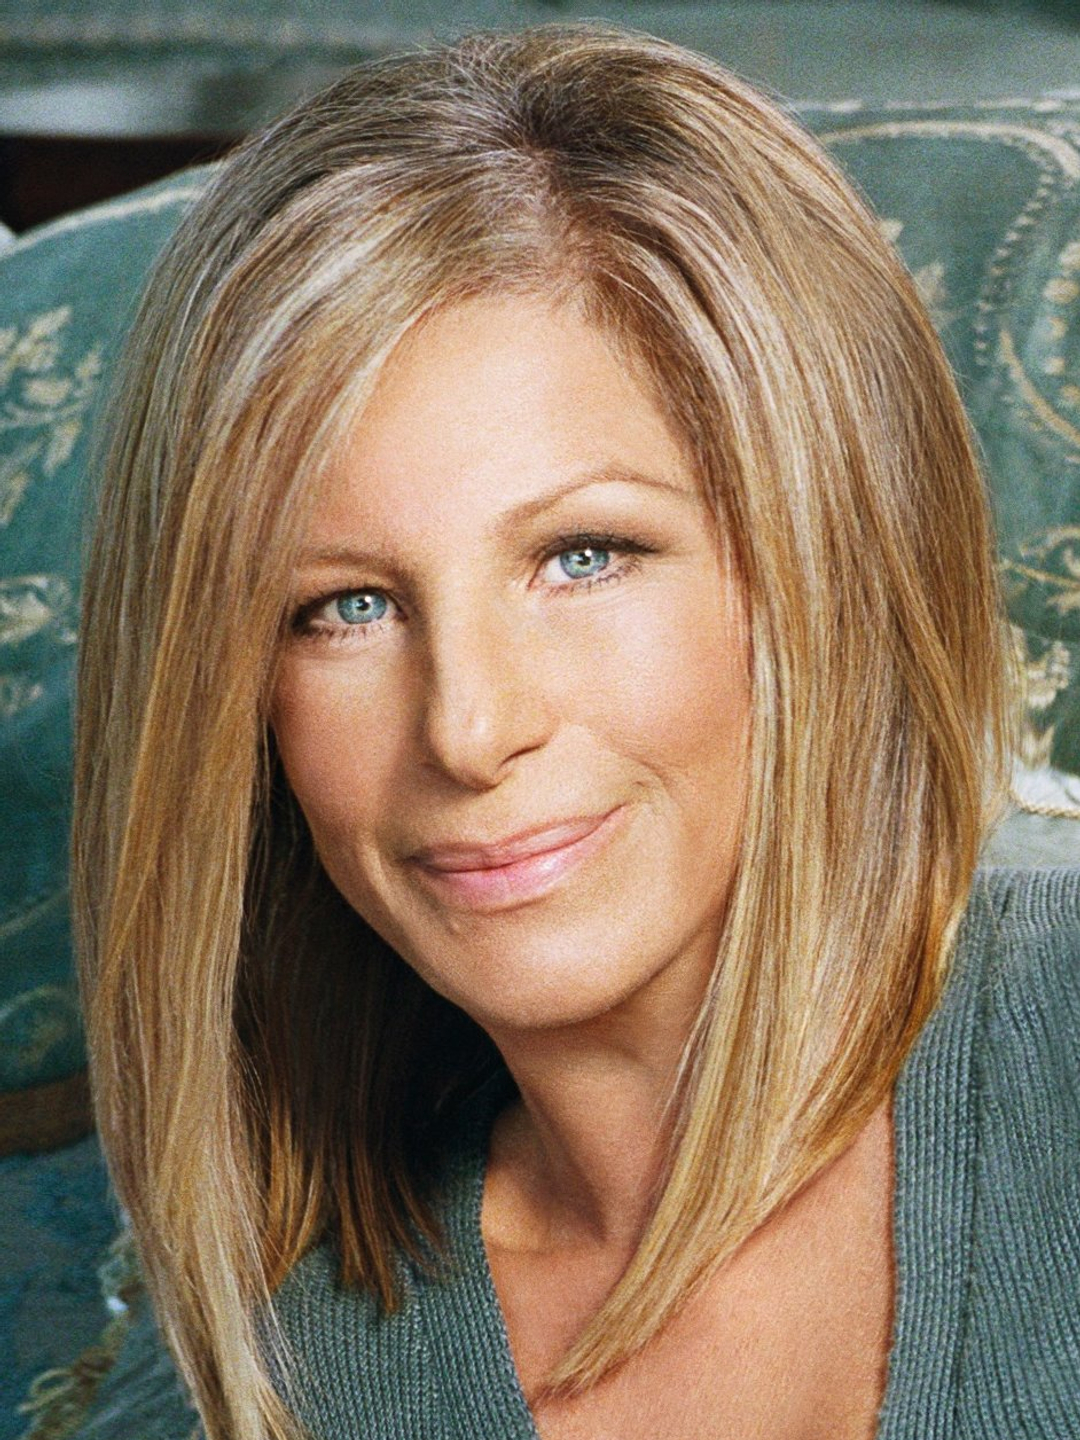 Barbra Streisand how old is she